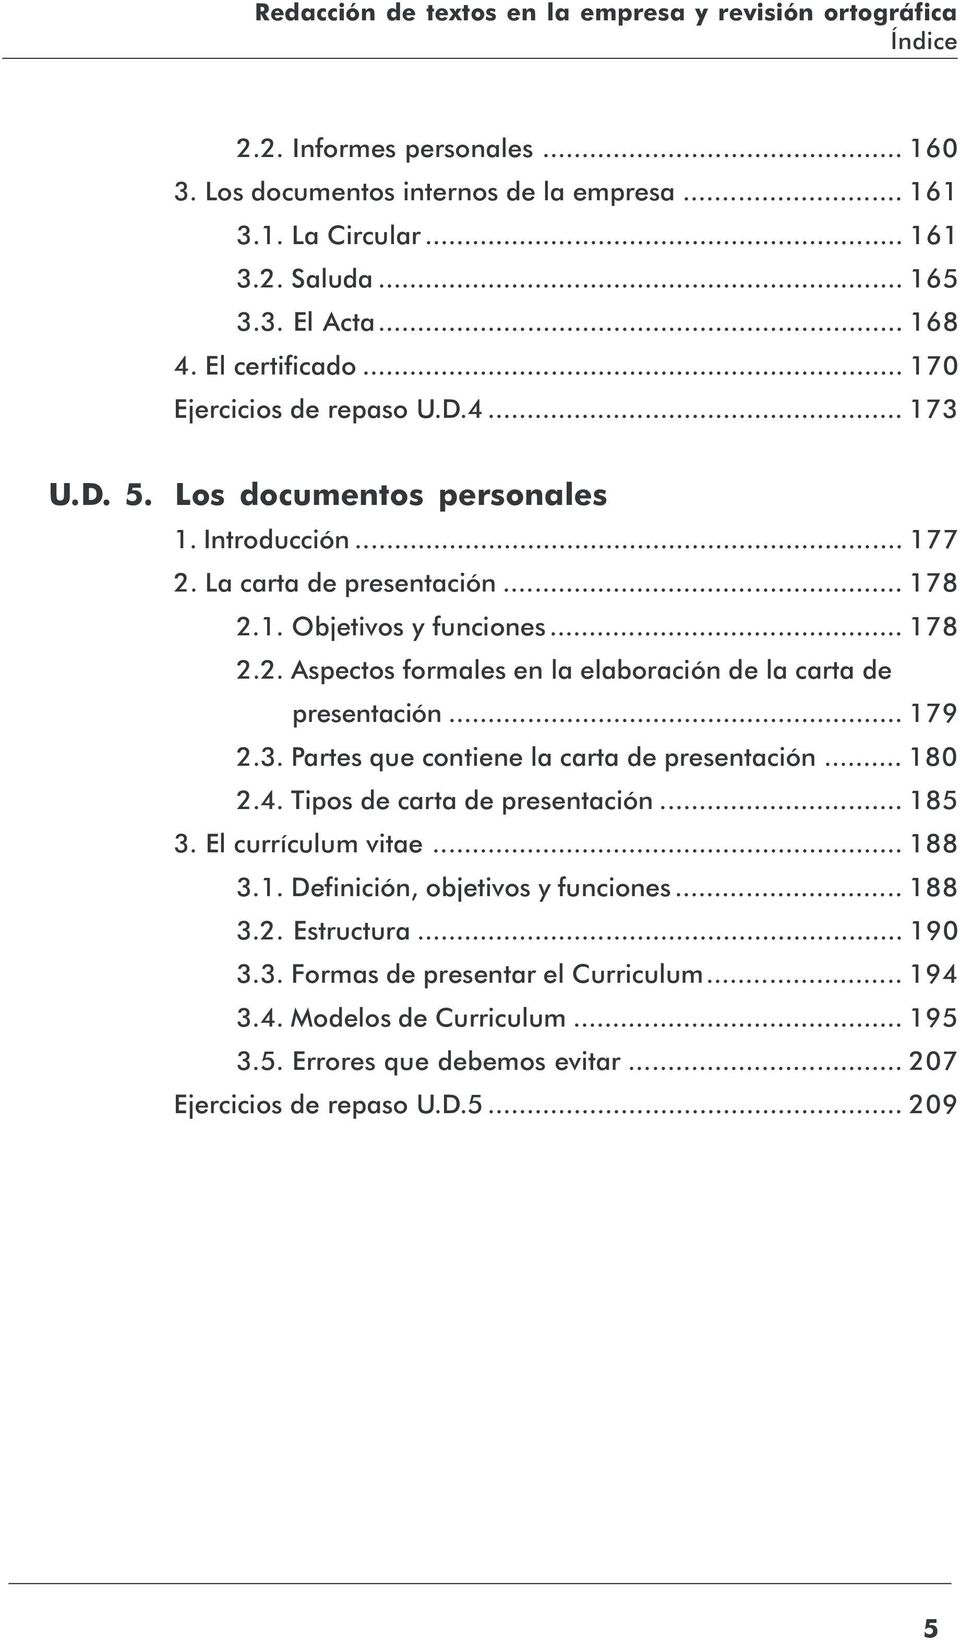 .. 179 2.3. Partes que contiene la carta de presentación... 180 2.4. Tipos de carta de presentación... 185 3. El currículum vitae... 188 3.1. Definición, objetivos y funciones... 188 3.2. Estructura.